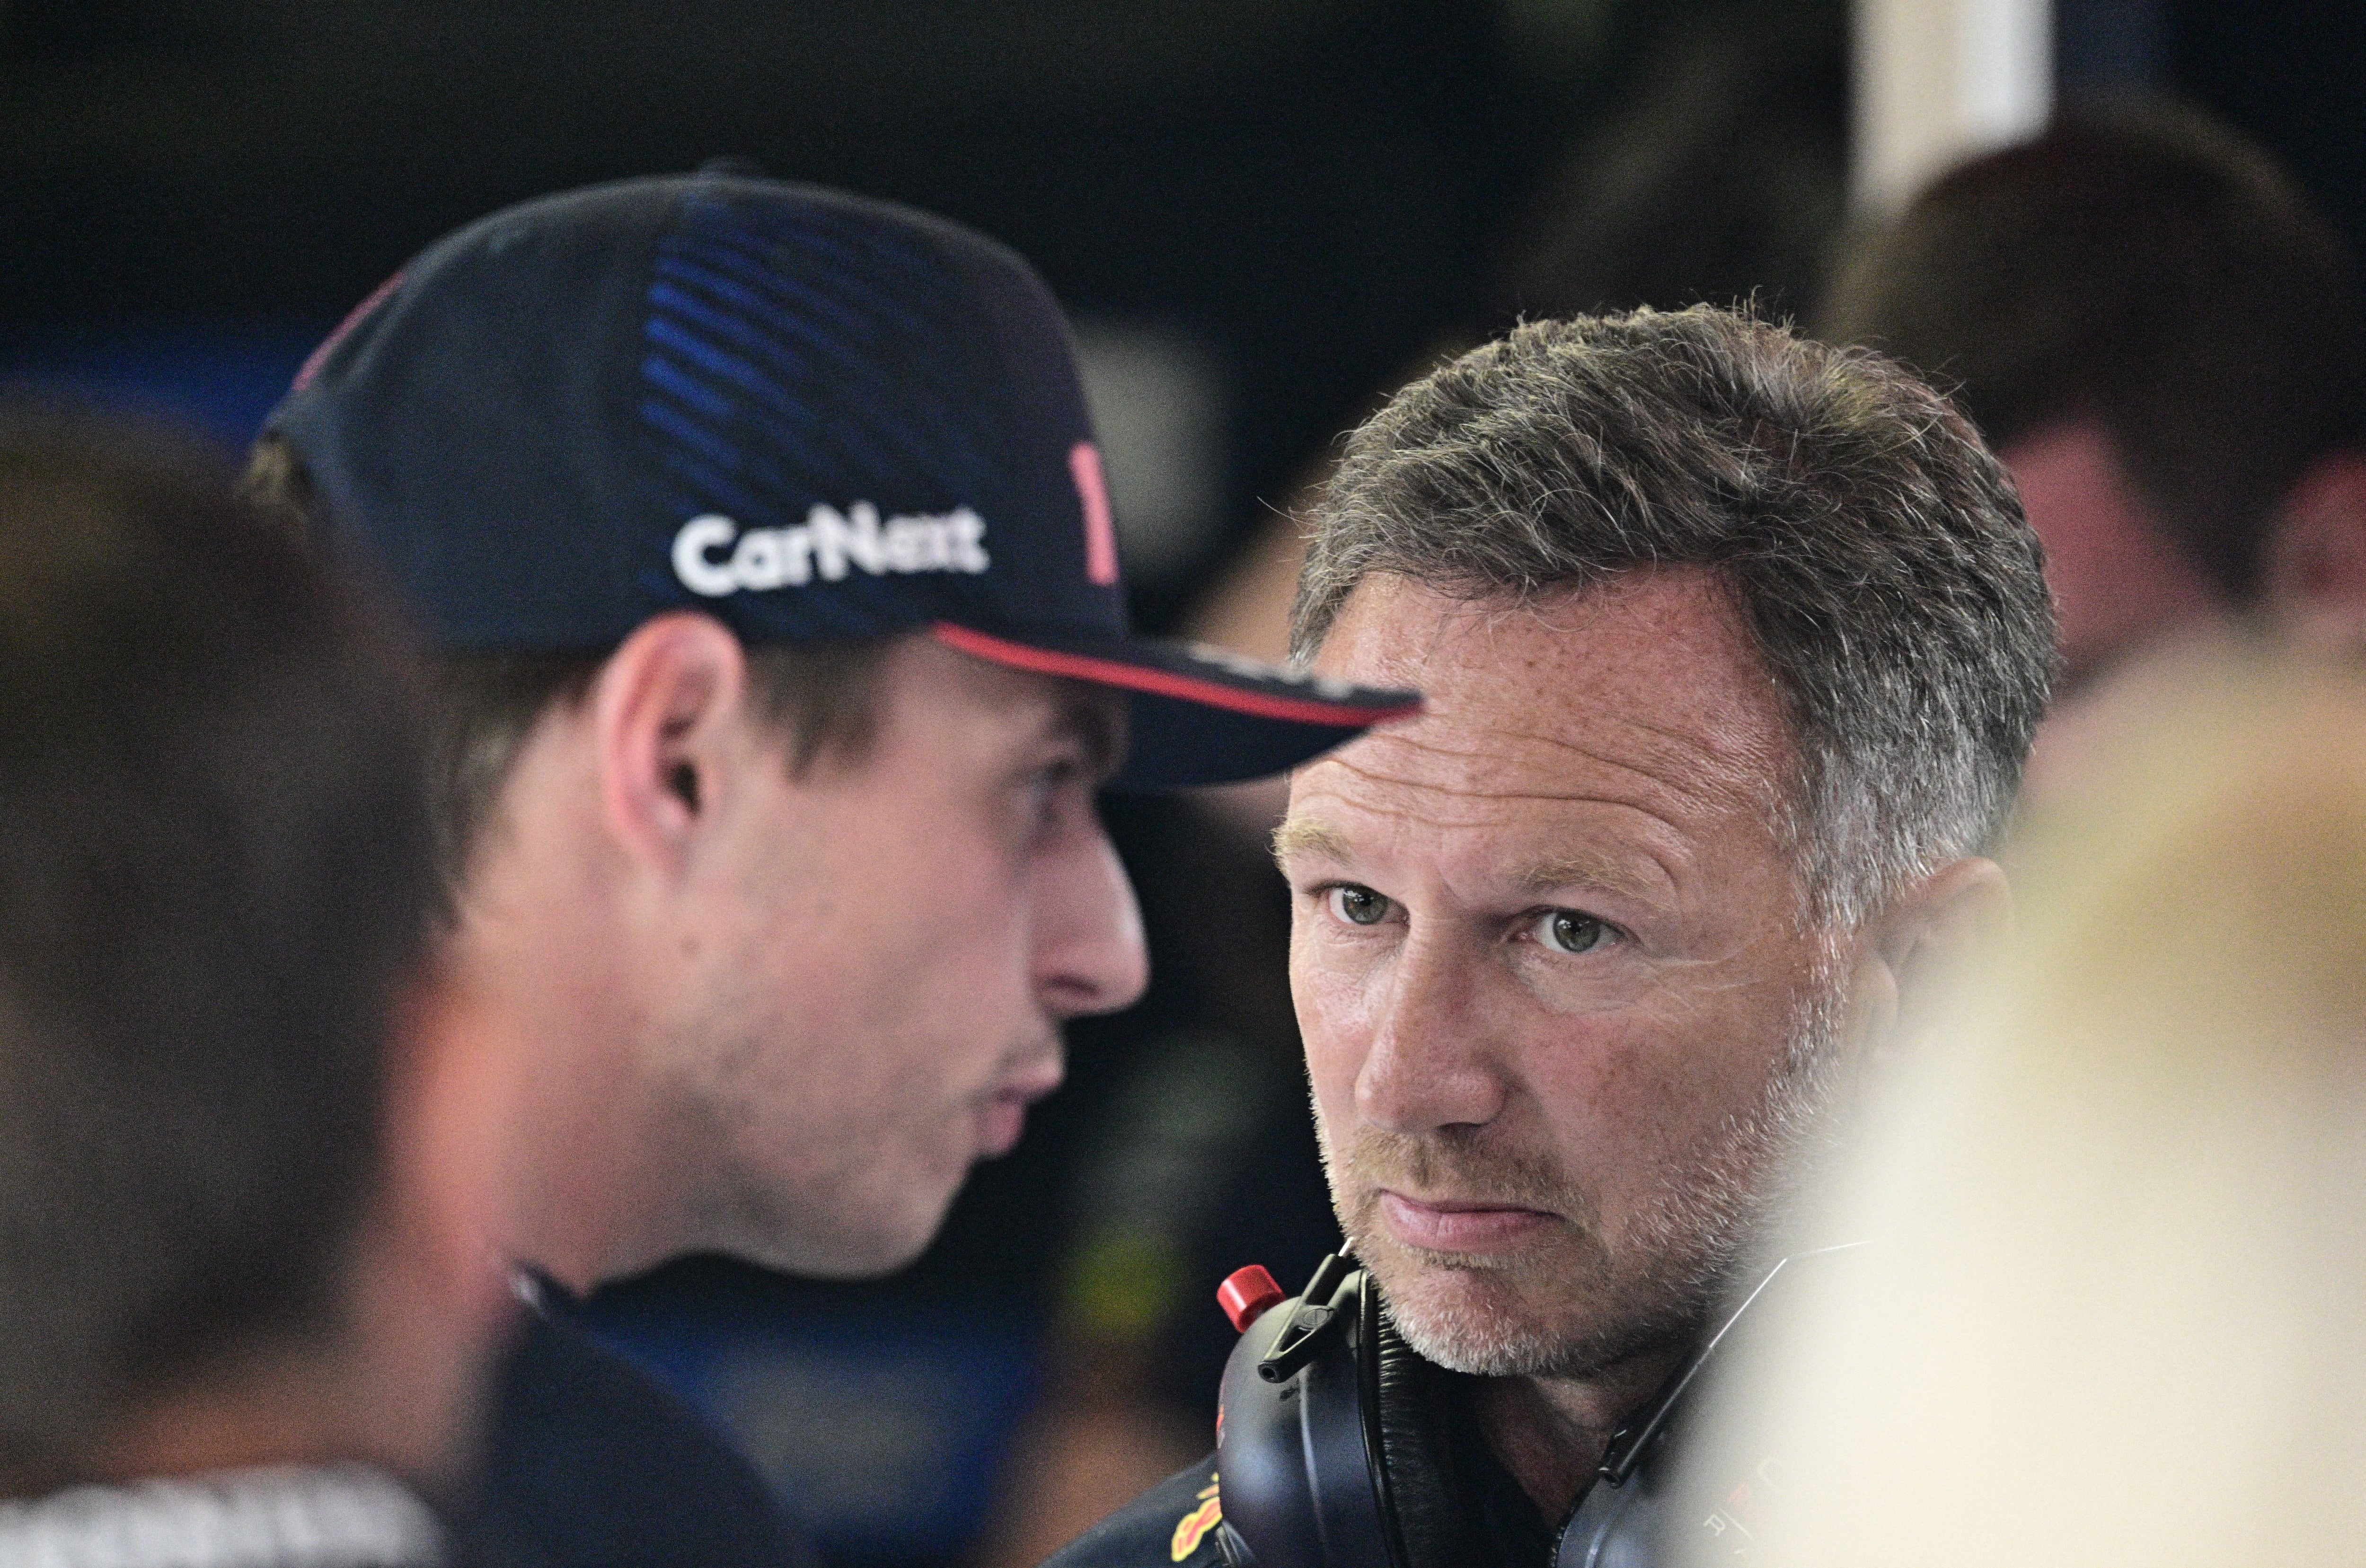 La presencia del director en la presentación del nuevo prototipo de Red Bull es todavía una incógnita (Foto: Reuters)